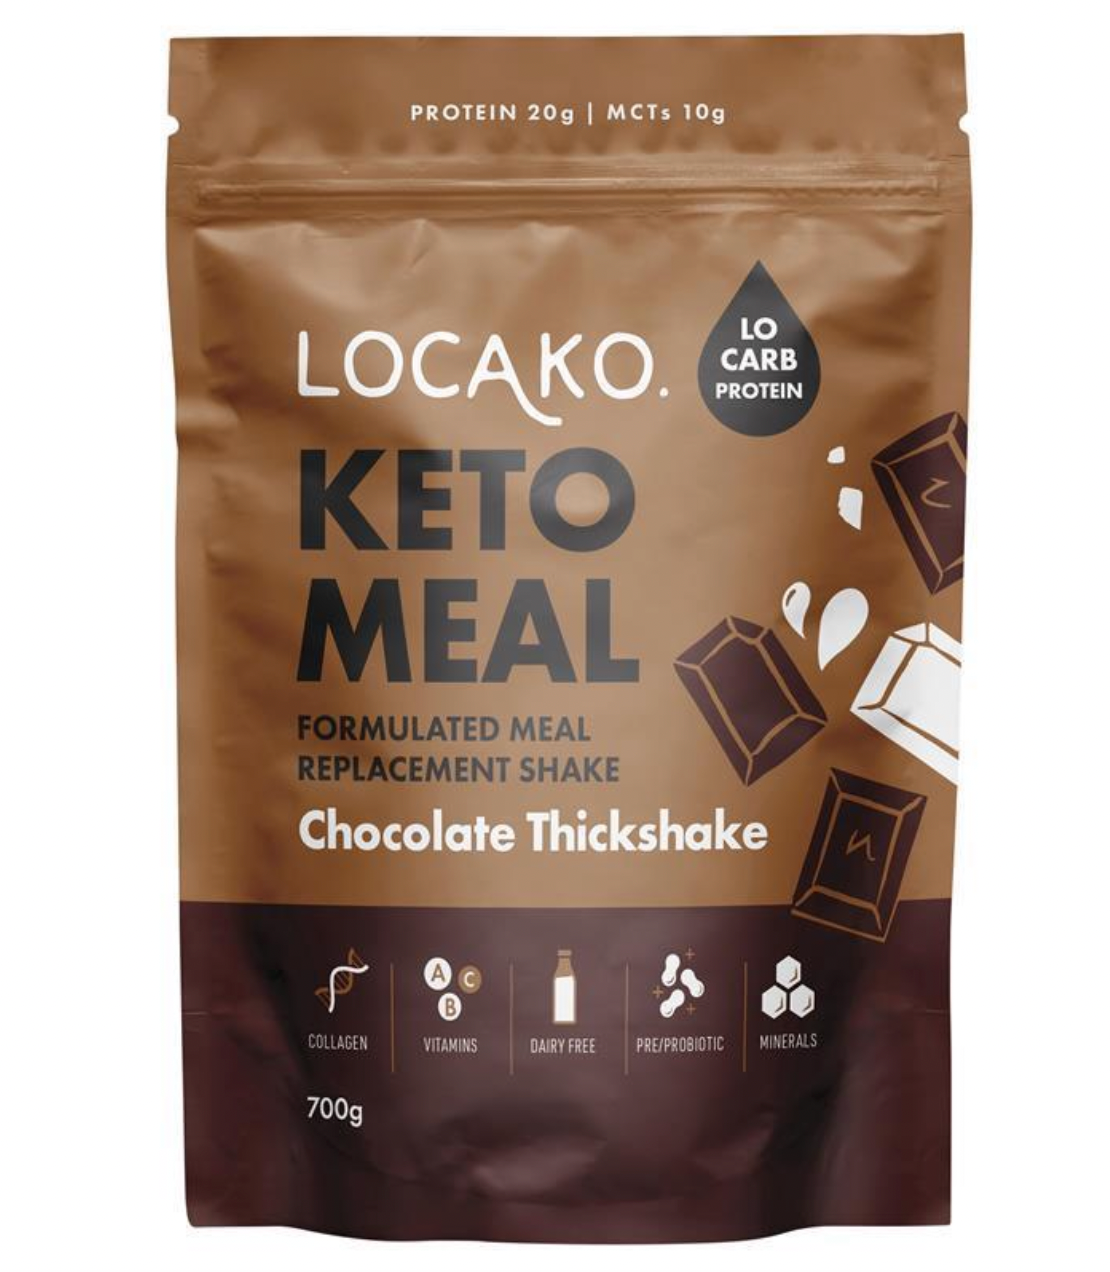 Keto Meal - Formulated Replacement Shake - Choc Thickshake - Locako